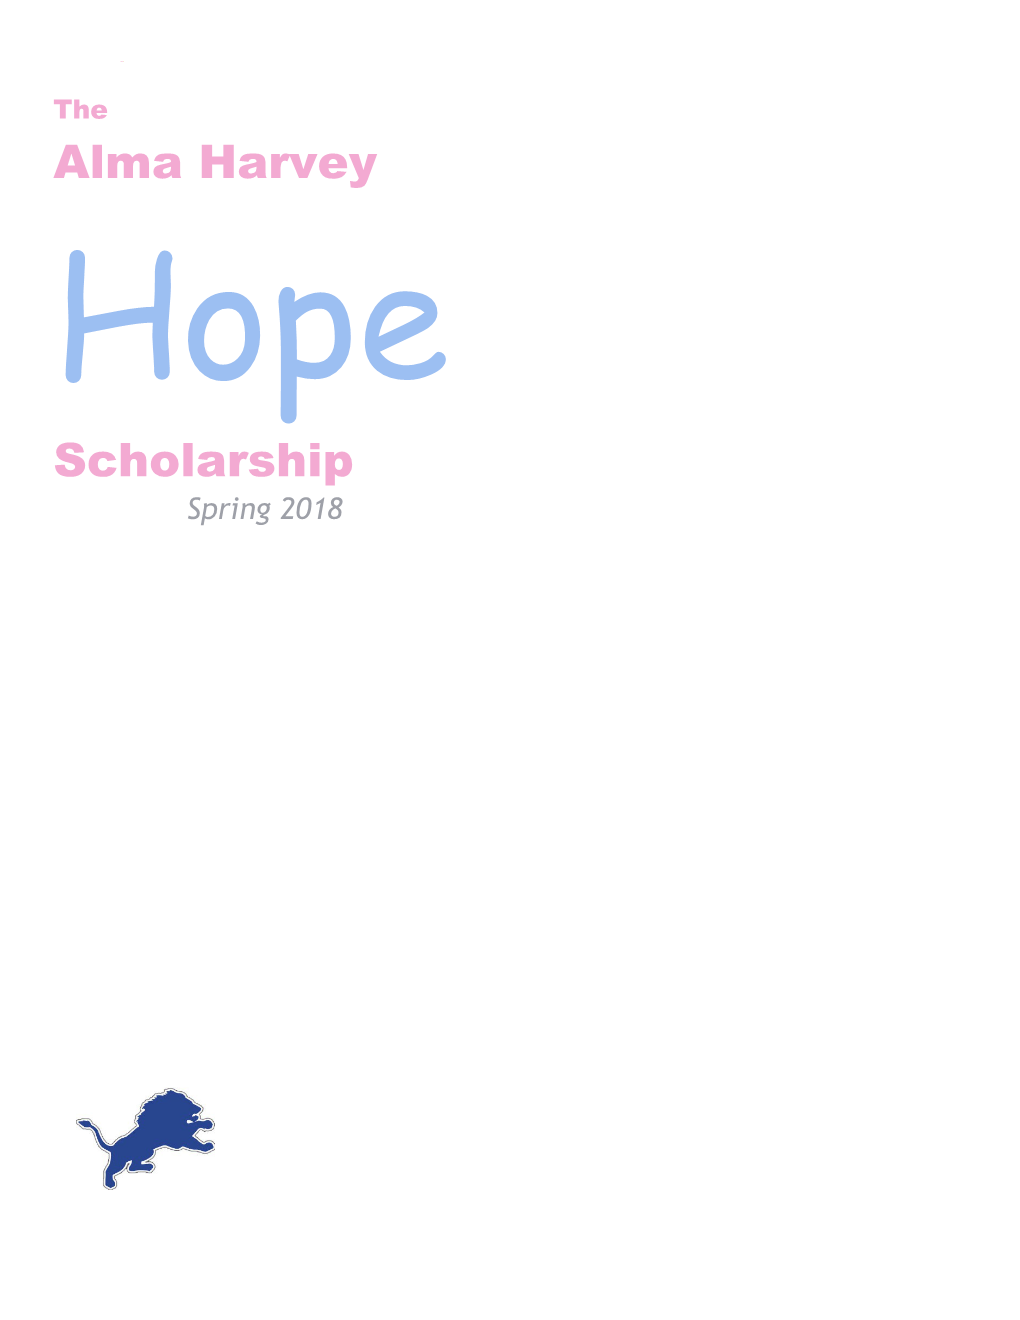 The Alma Harvey Hope Scholarship 2018